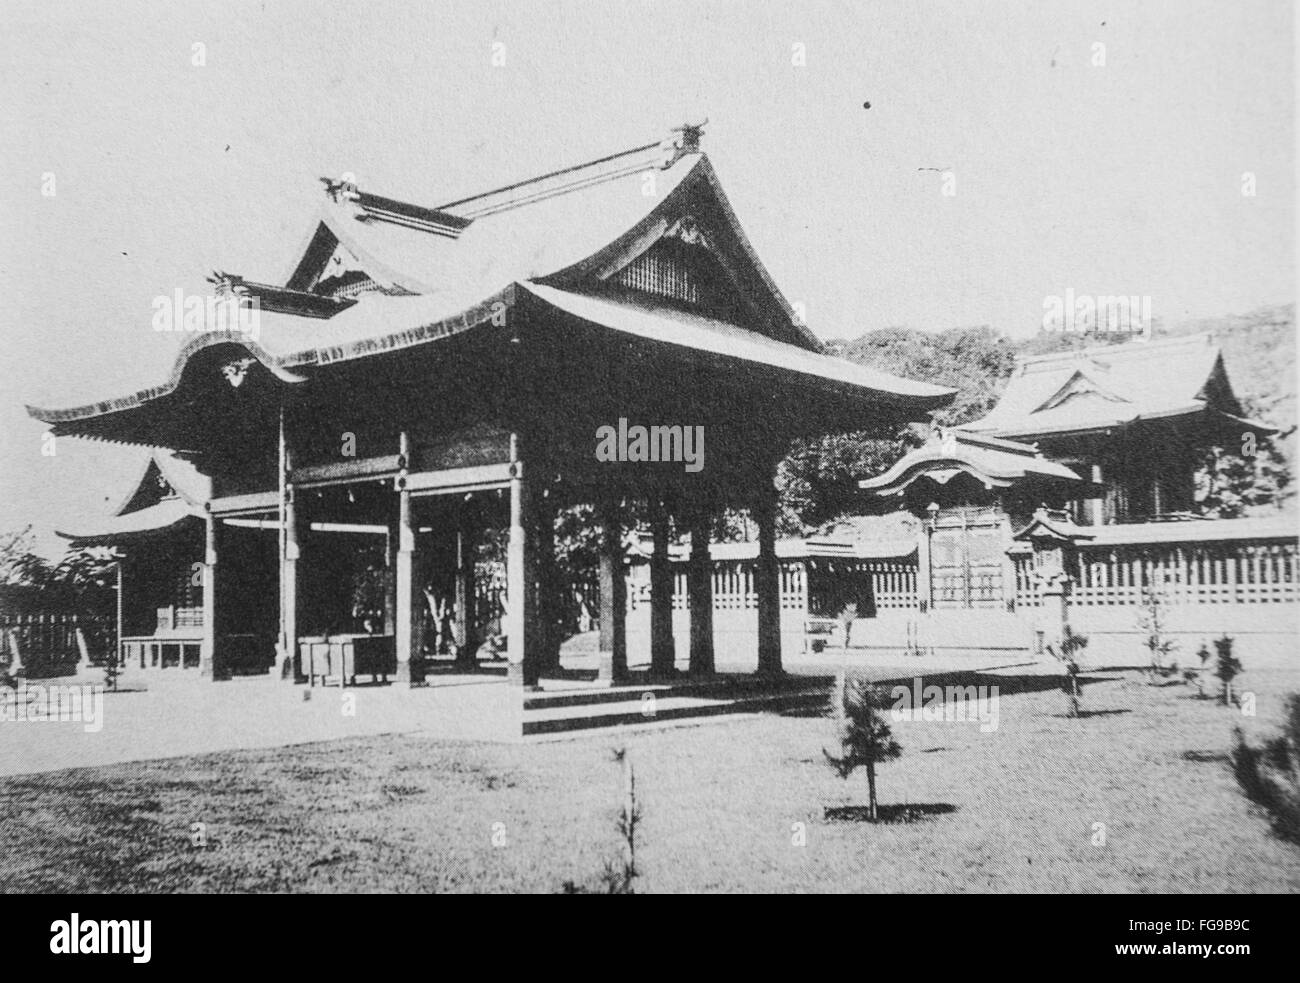 Modernisation de Taiwan sous la domination japonaise. Sanctuaire de Kaohsiung. Avant 1930. Banque D'Images